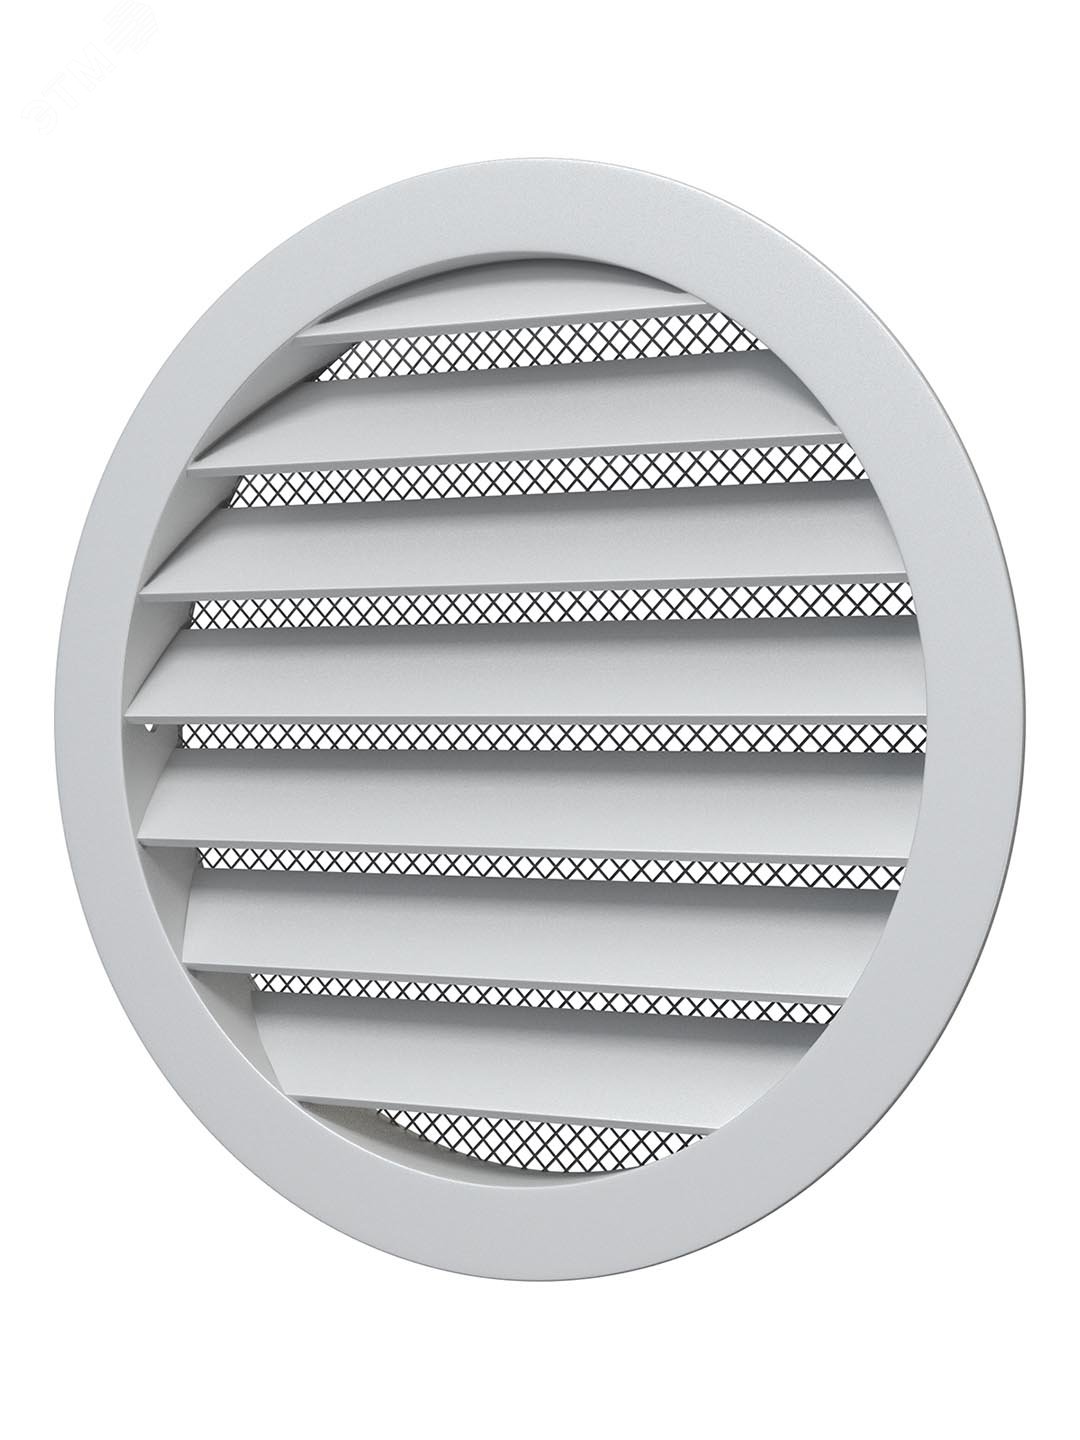 Решетка вентиляционная круглая D150 алюминиевая с фланцем D125 12,5РКМ ERA - превью